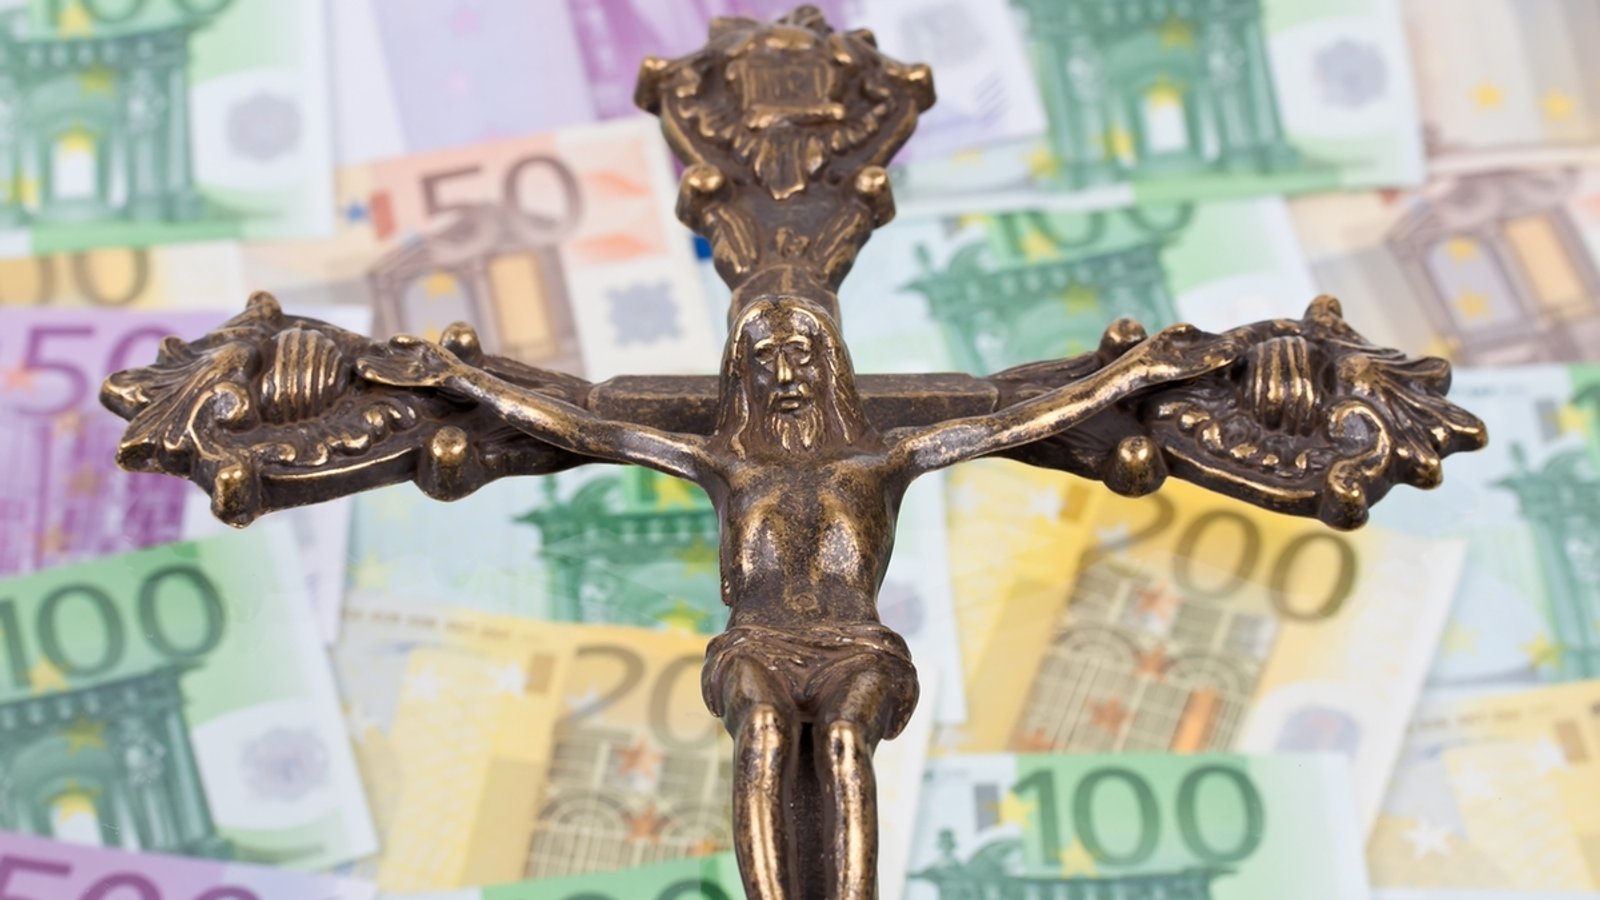 Bargeld auf Amberger Altar: Fund gehört jetzt dem Pfarrer